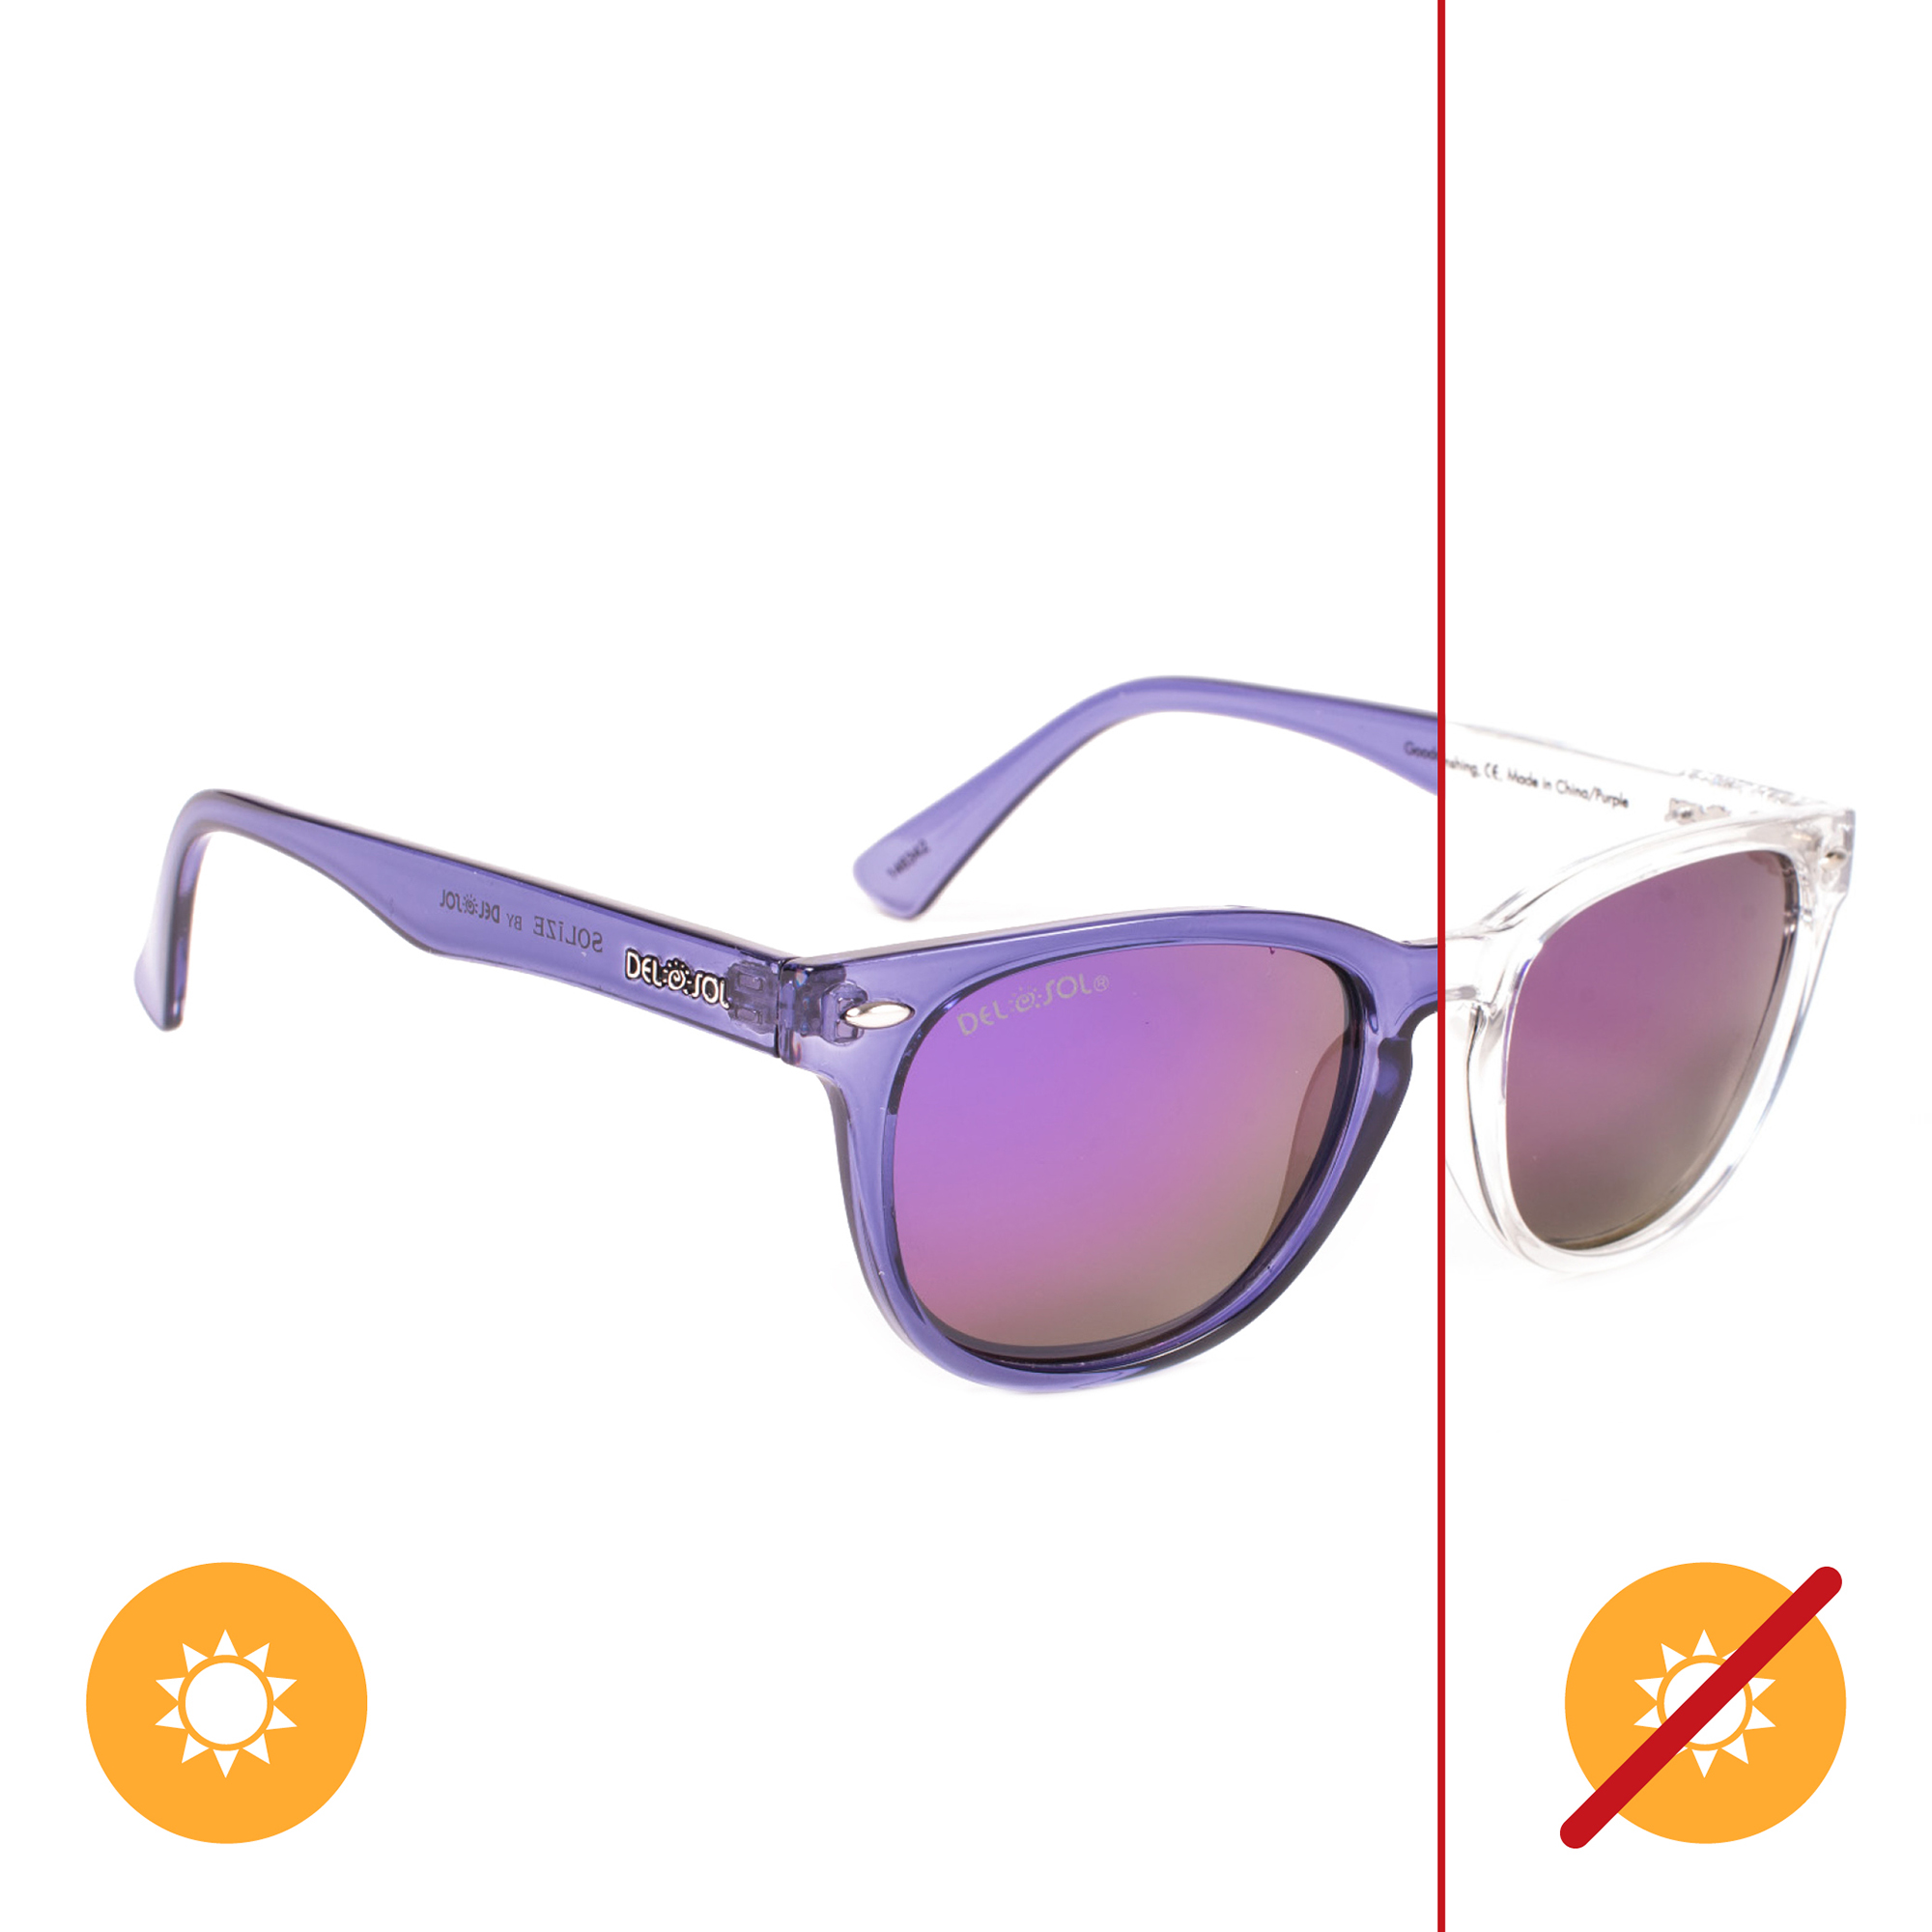 Del Sol Solize Good Day Sunshine - Clear-Purple for Unisex 1 Pc Sunglasses